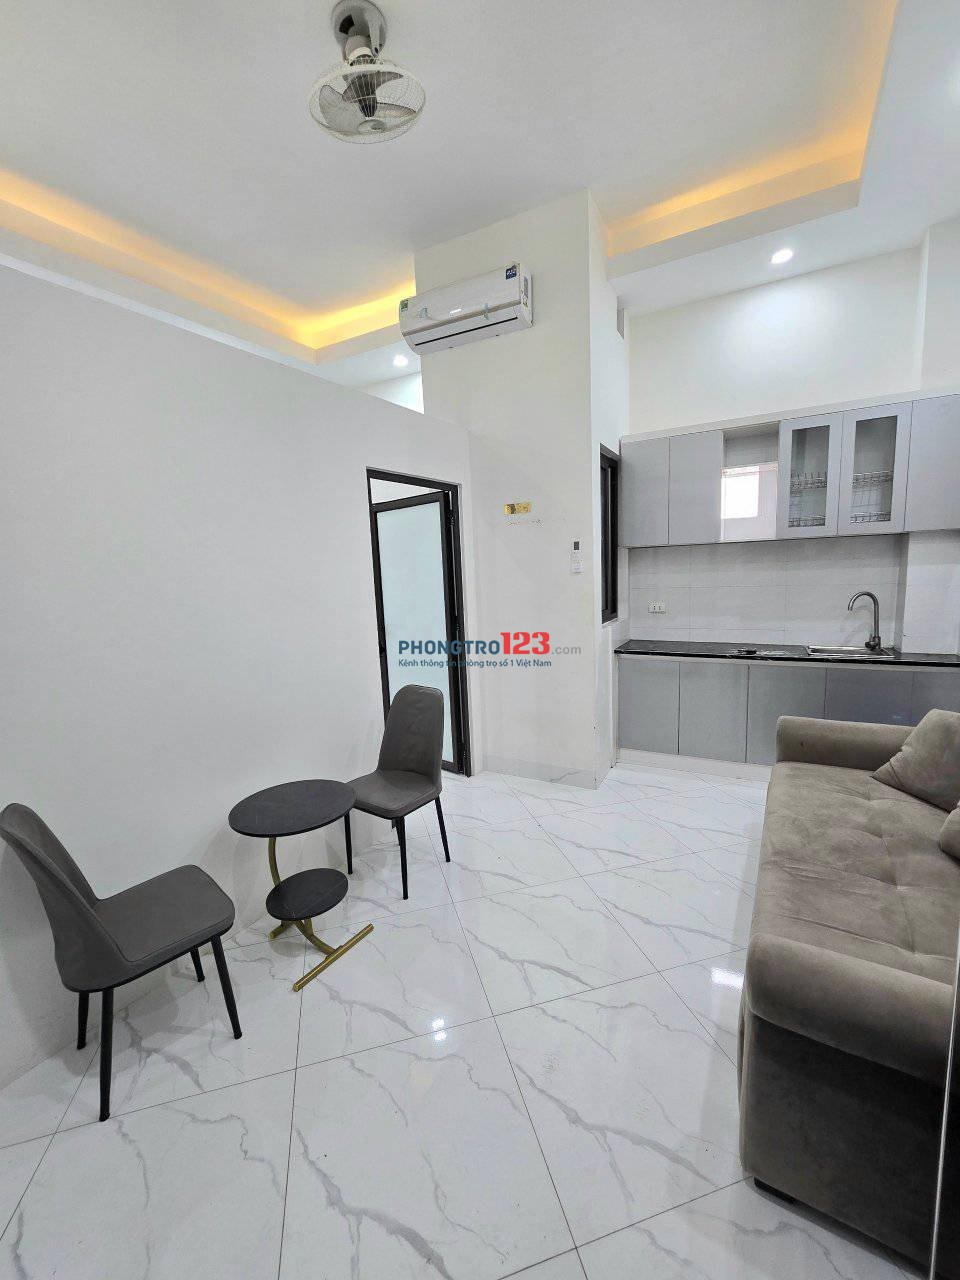 Cho thuê phòng trọ tại Kim Giang, Thanh Trì, đầy đủ nội thất cao cấp, giá 4,5 triệu/tháng